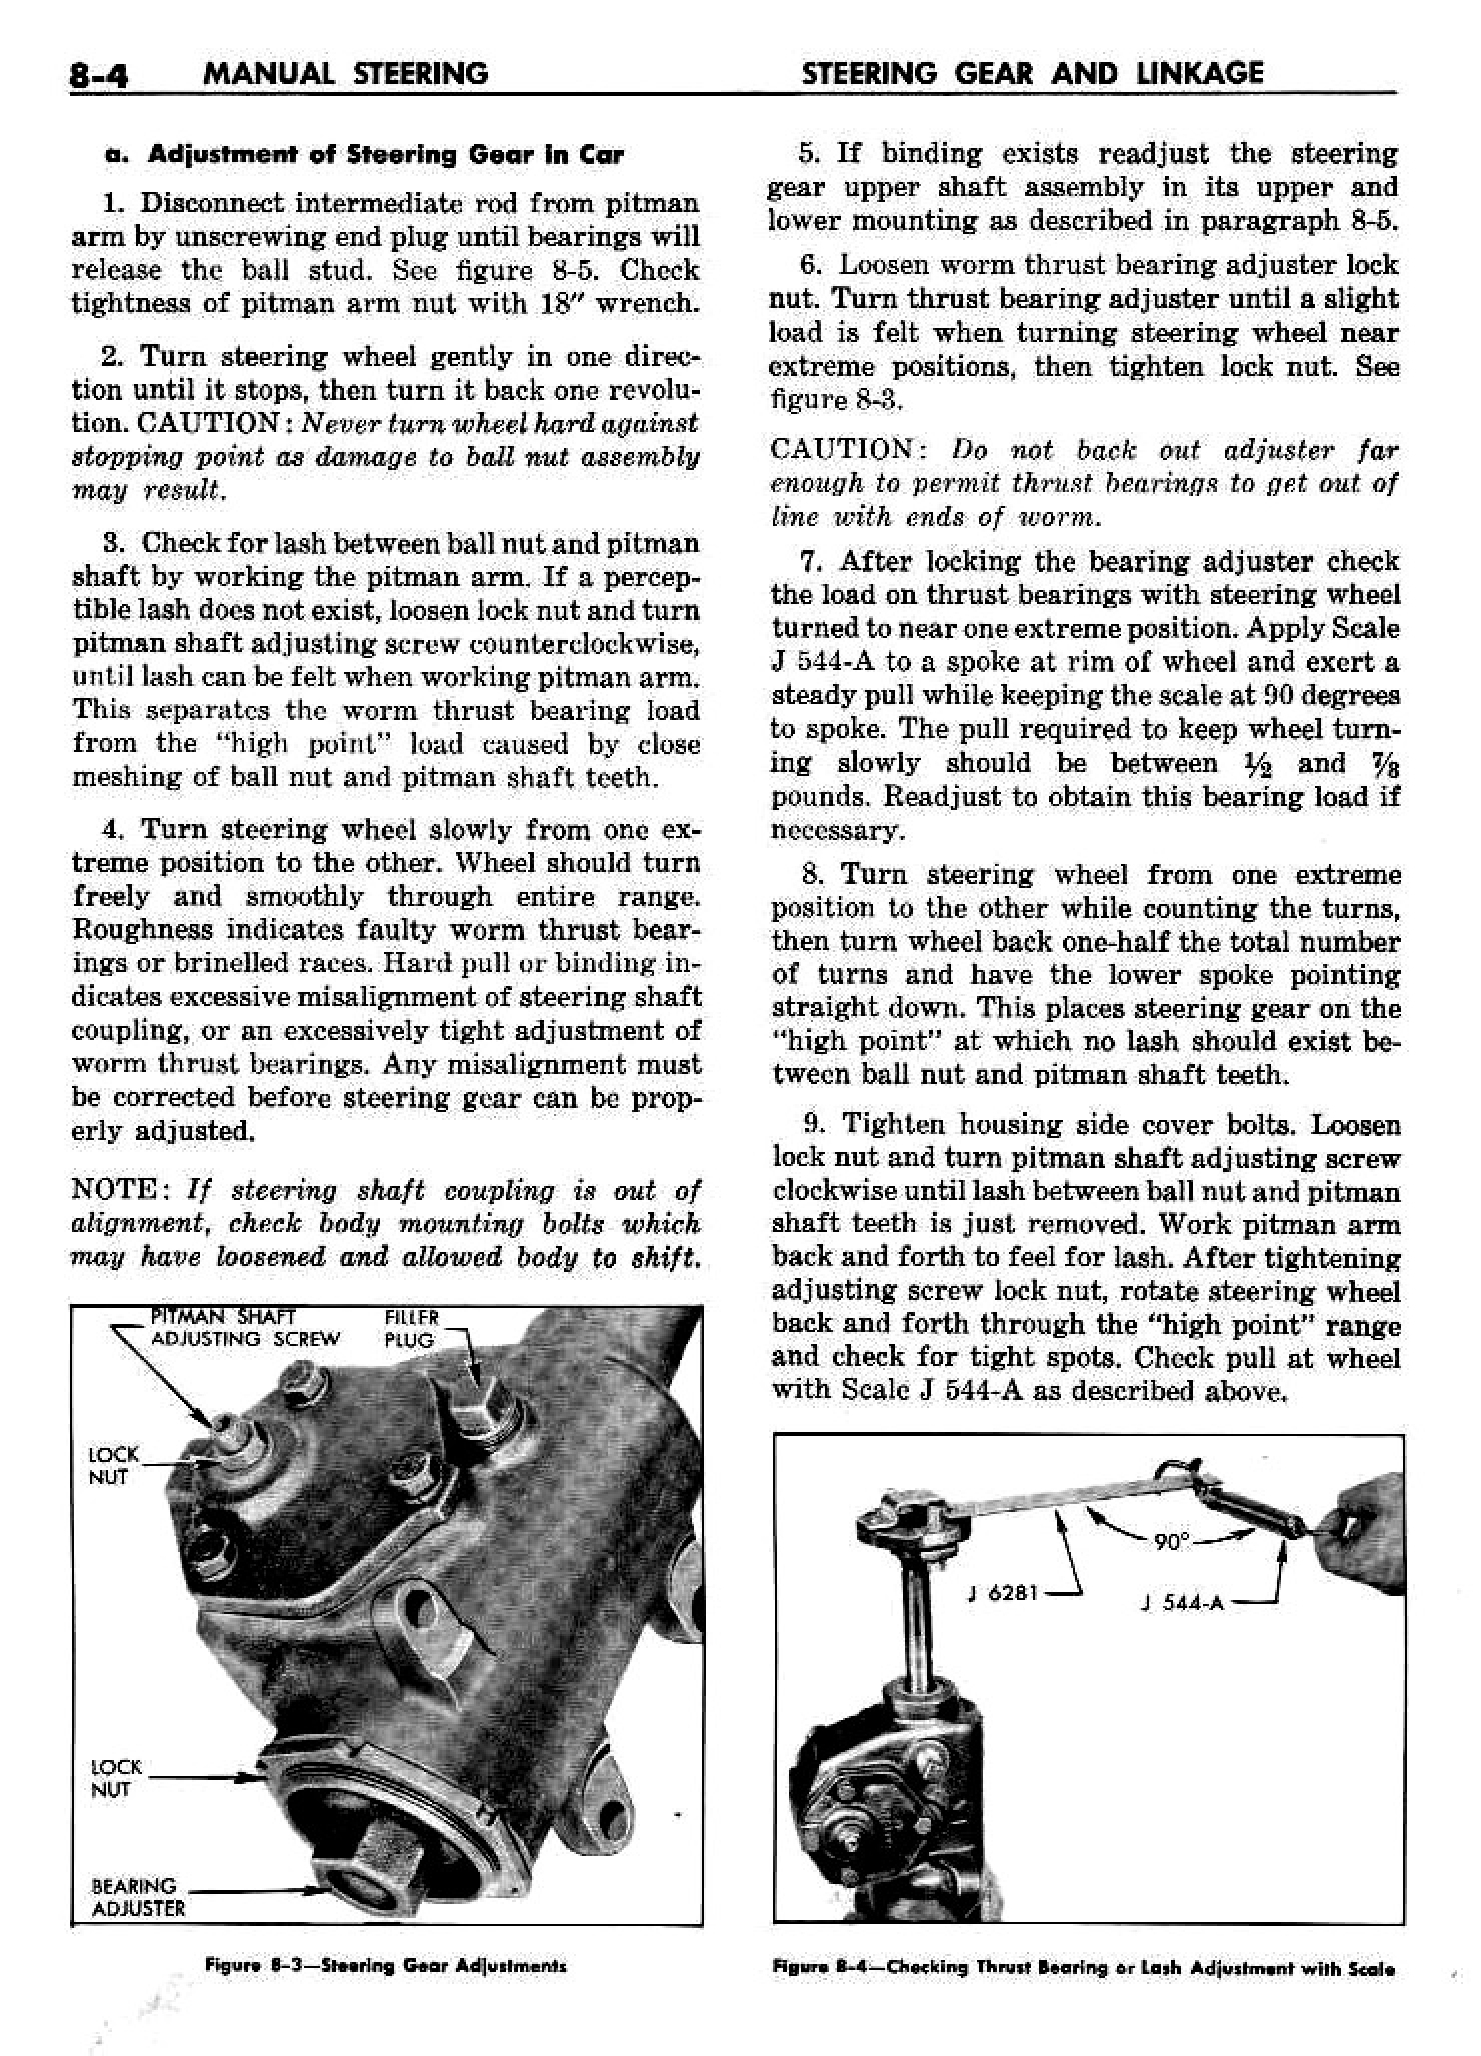 n_09 1958 Buick Shop Manual - Steering_4.jpg